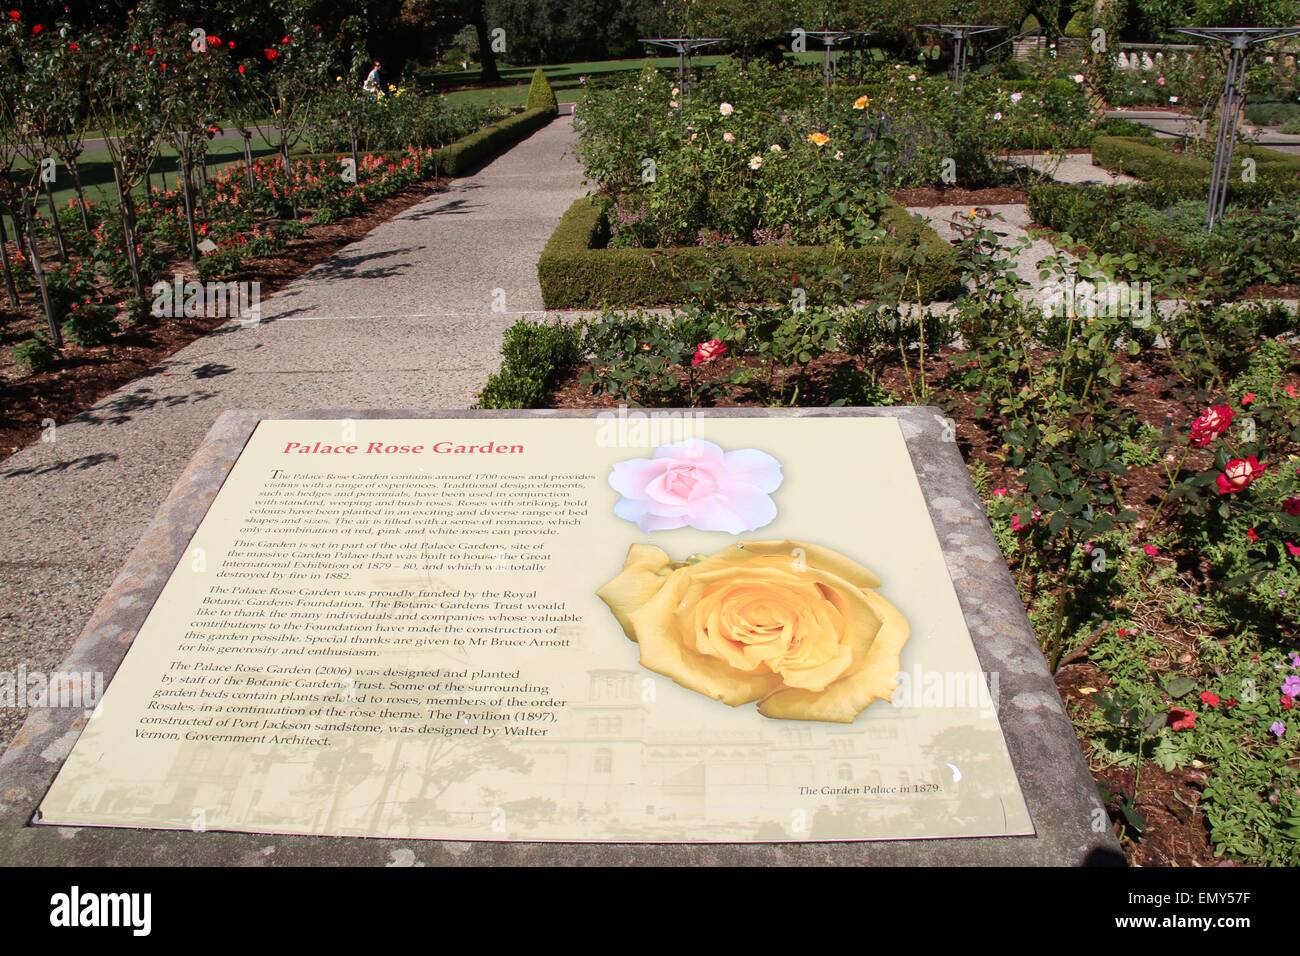 Sydney, Australie. 24 avril 2015. Le Rose Garden Palace au Royal Botanic Gardens de Sydney. Crédit : Richard Milnes/Alamy Banque D'Images